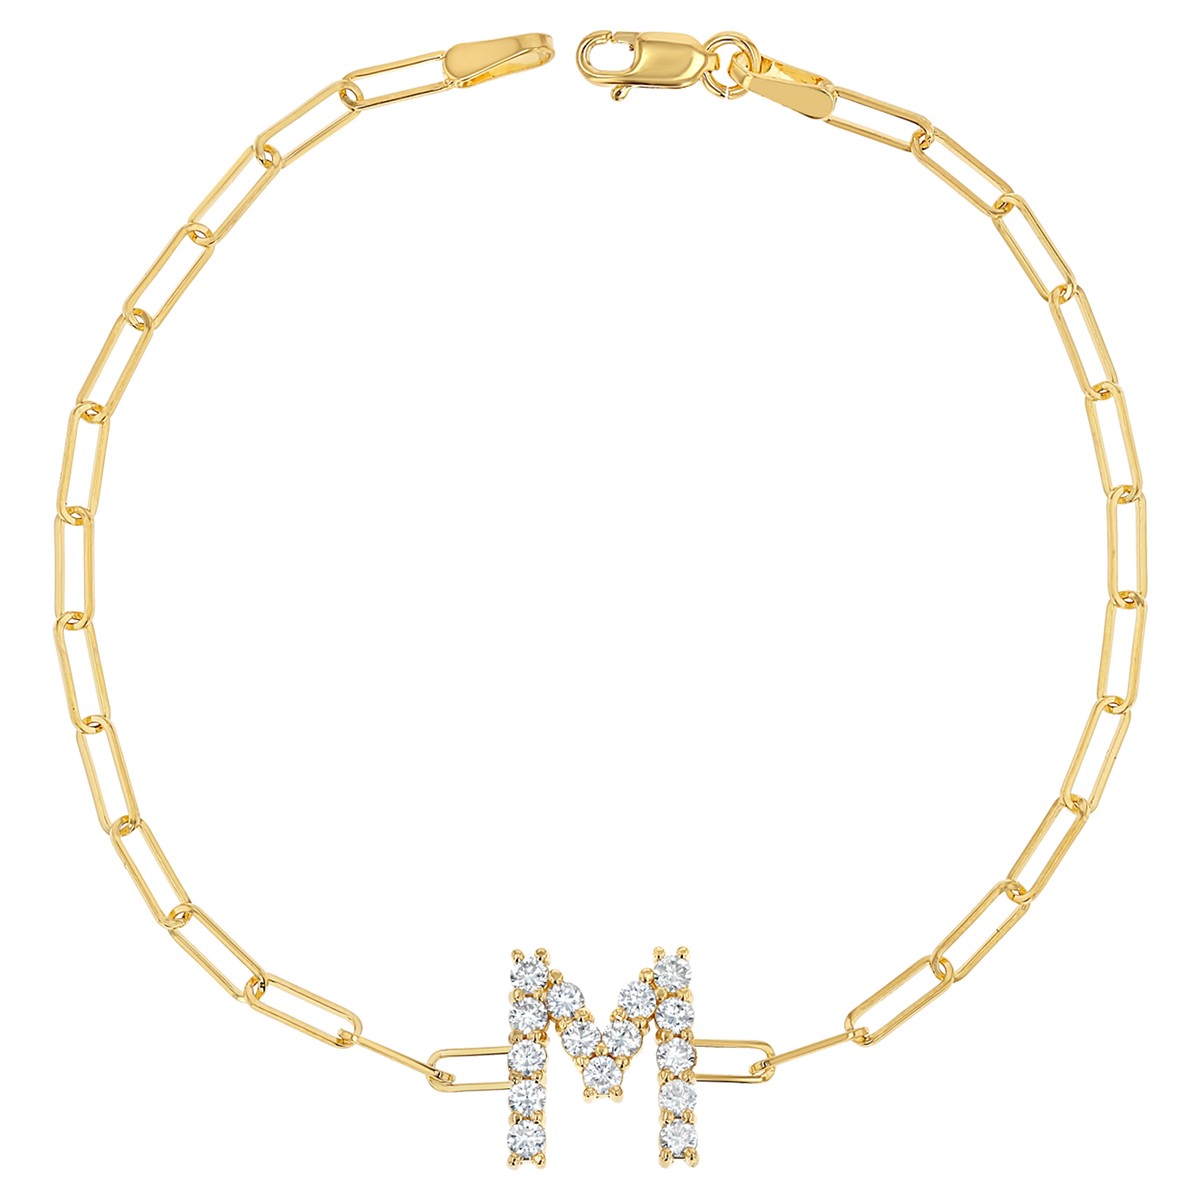 Louis Vuitton, Jewelry, Louis Vuitton Lv Me Letter M Pendant Necklace  Gold Metal